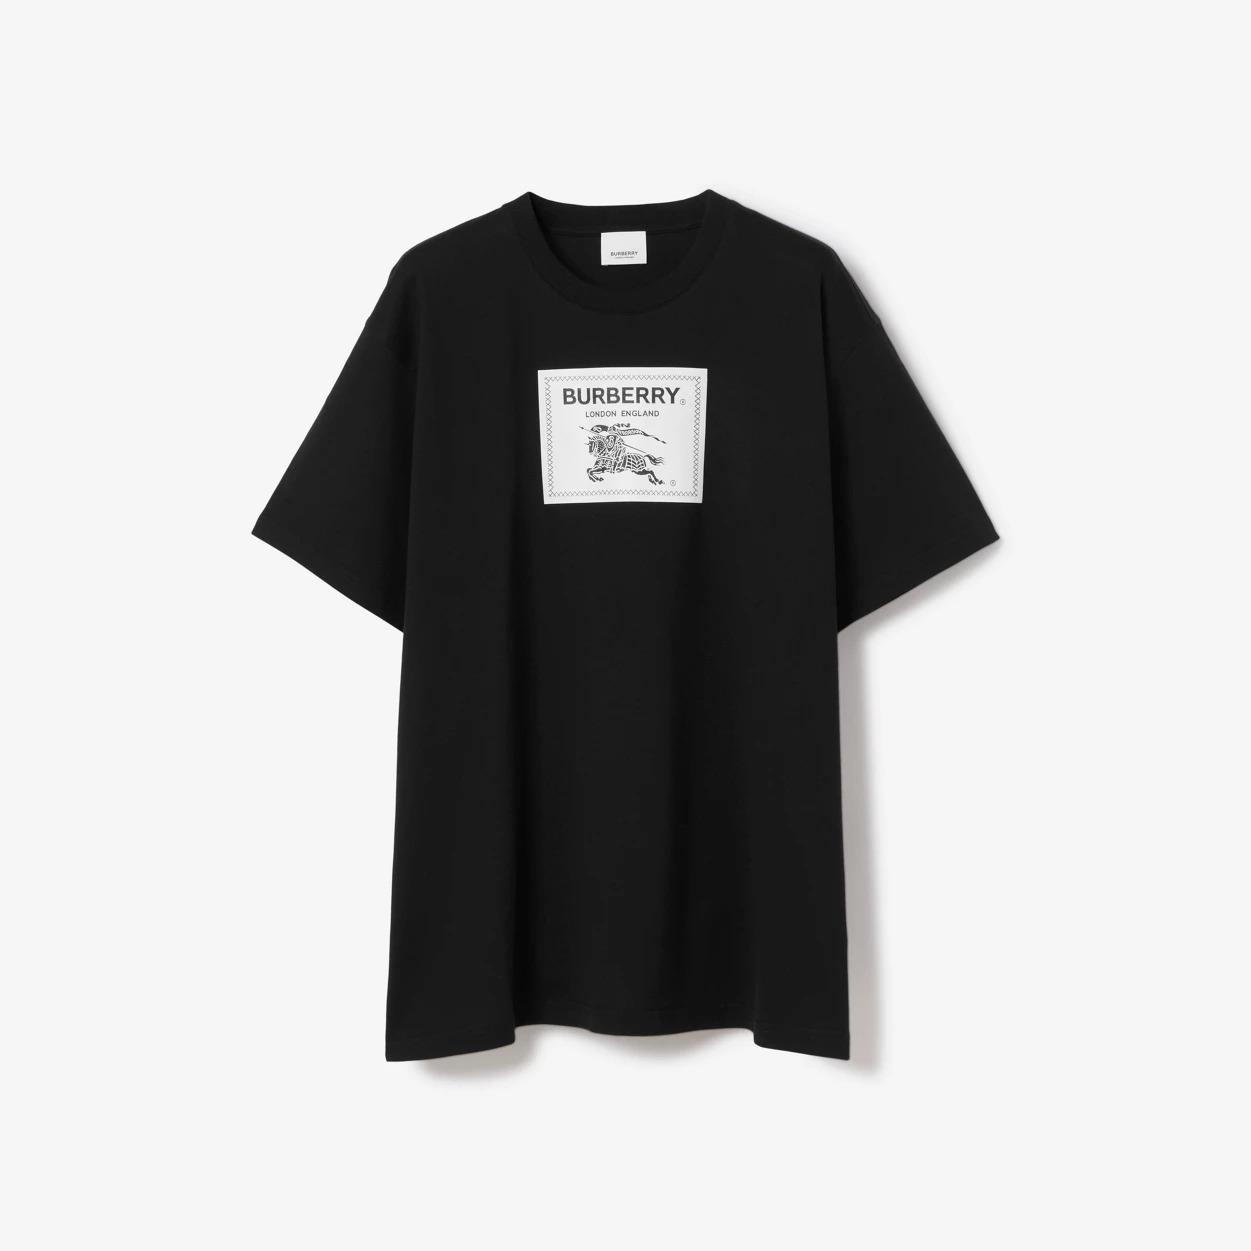 prorsum-label-cotton-t-shirt-6600_16845013881-1000